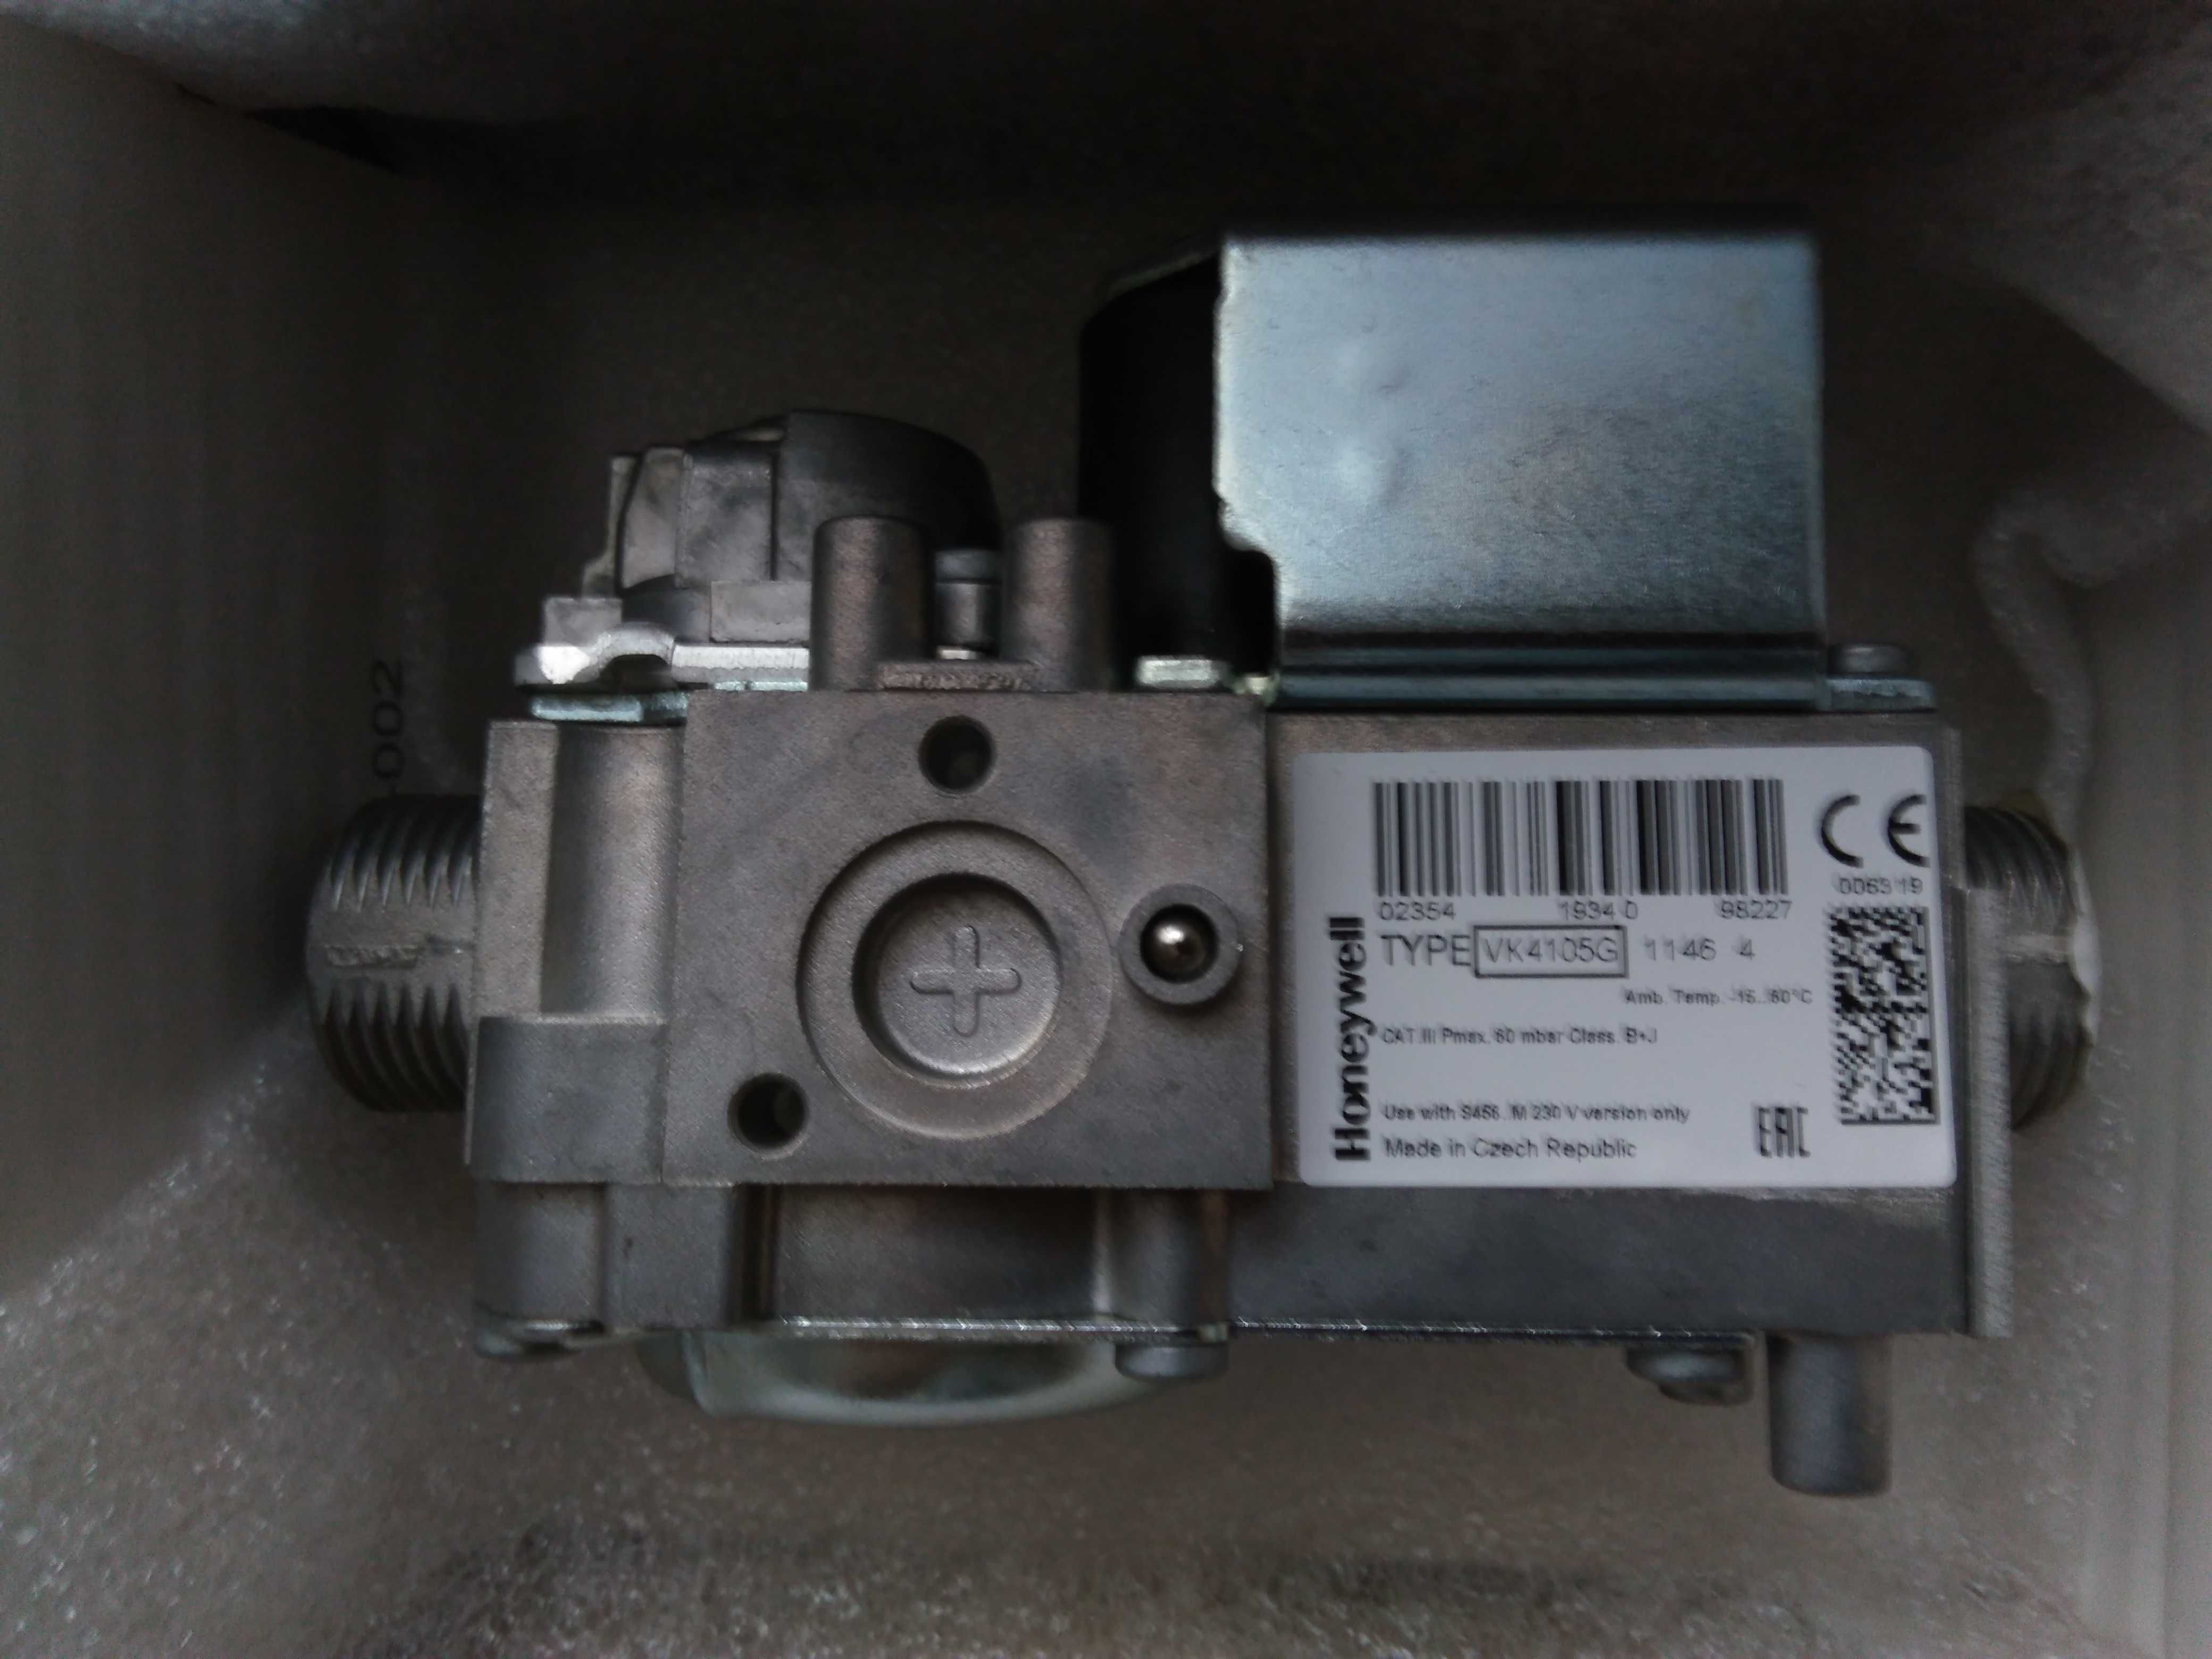 Клапан газовий для котлів Honeywell VK4105G 1146 4